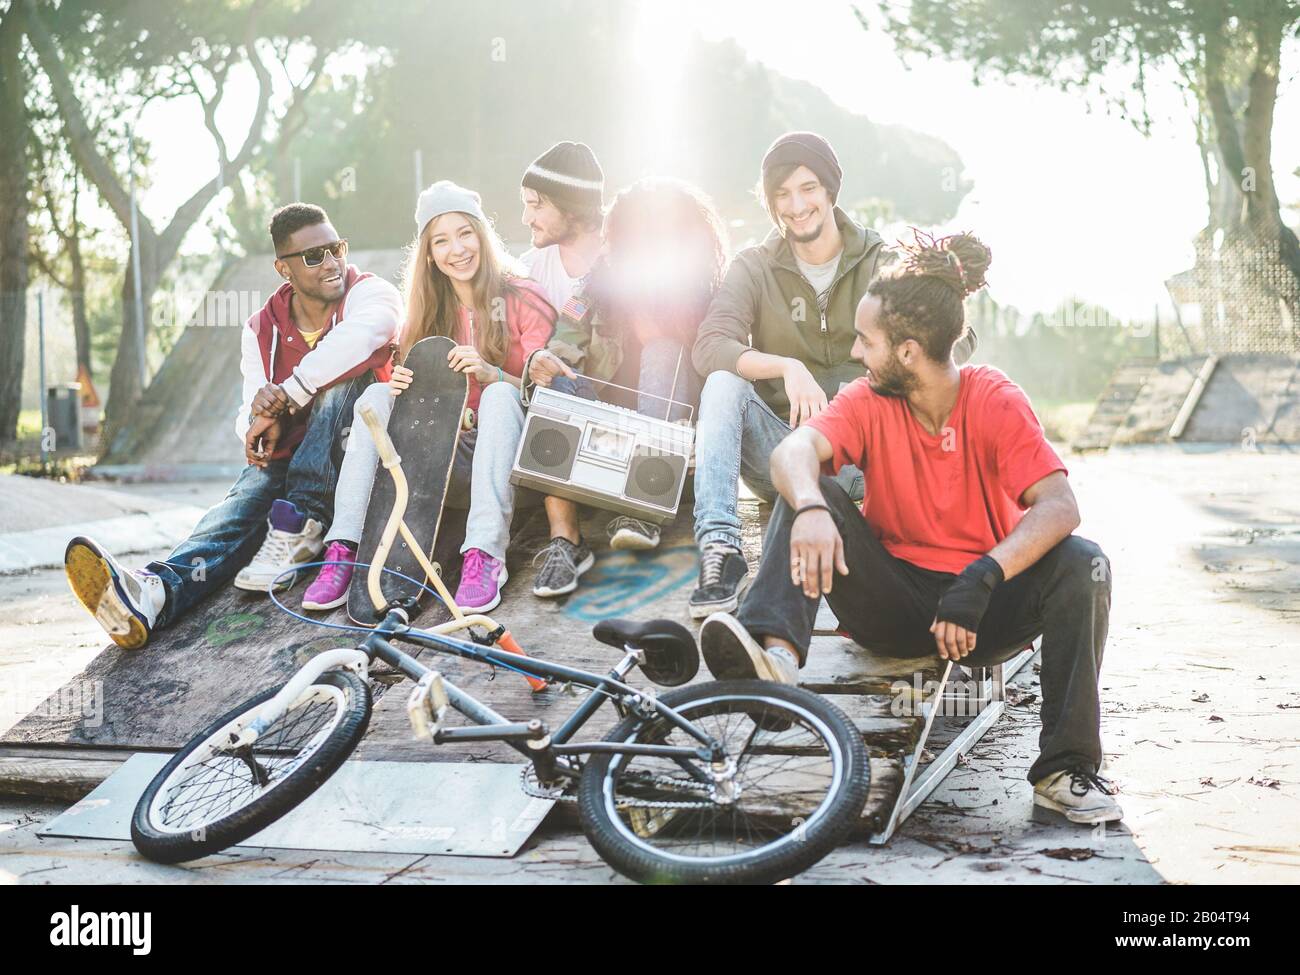 Junge Freunde, die Musik hören und im Stadtpark lachen - Gruppe von mehrjährigen Menschen, die gemeinsam Spaß haben - Jugend, urbaner Lebensstil, Multira Stockfoto